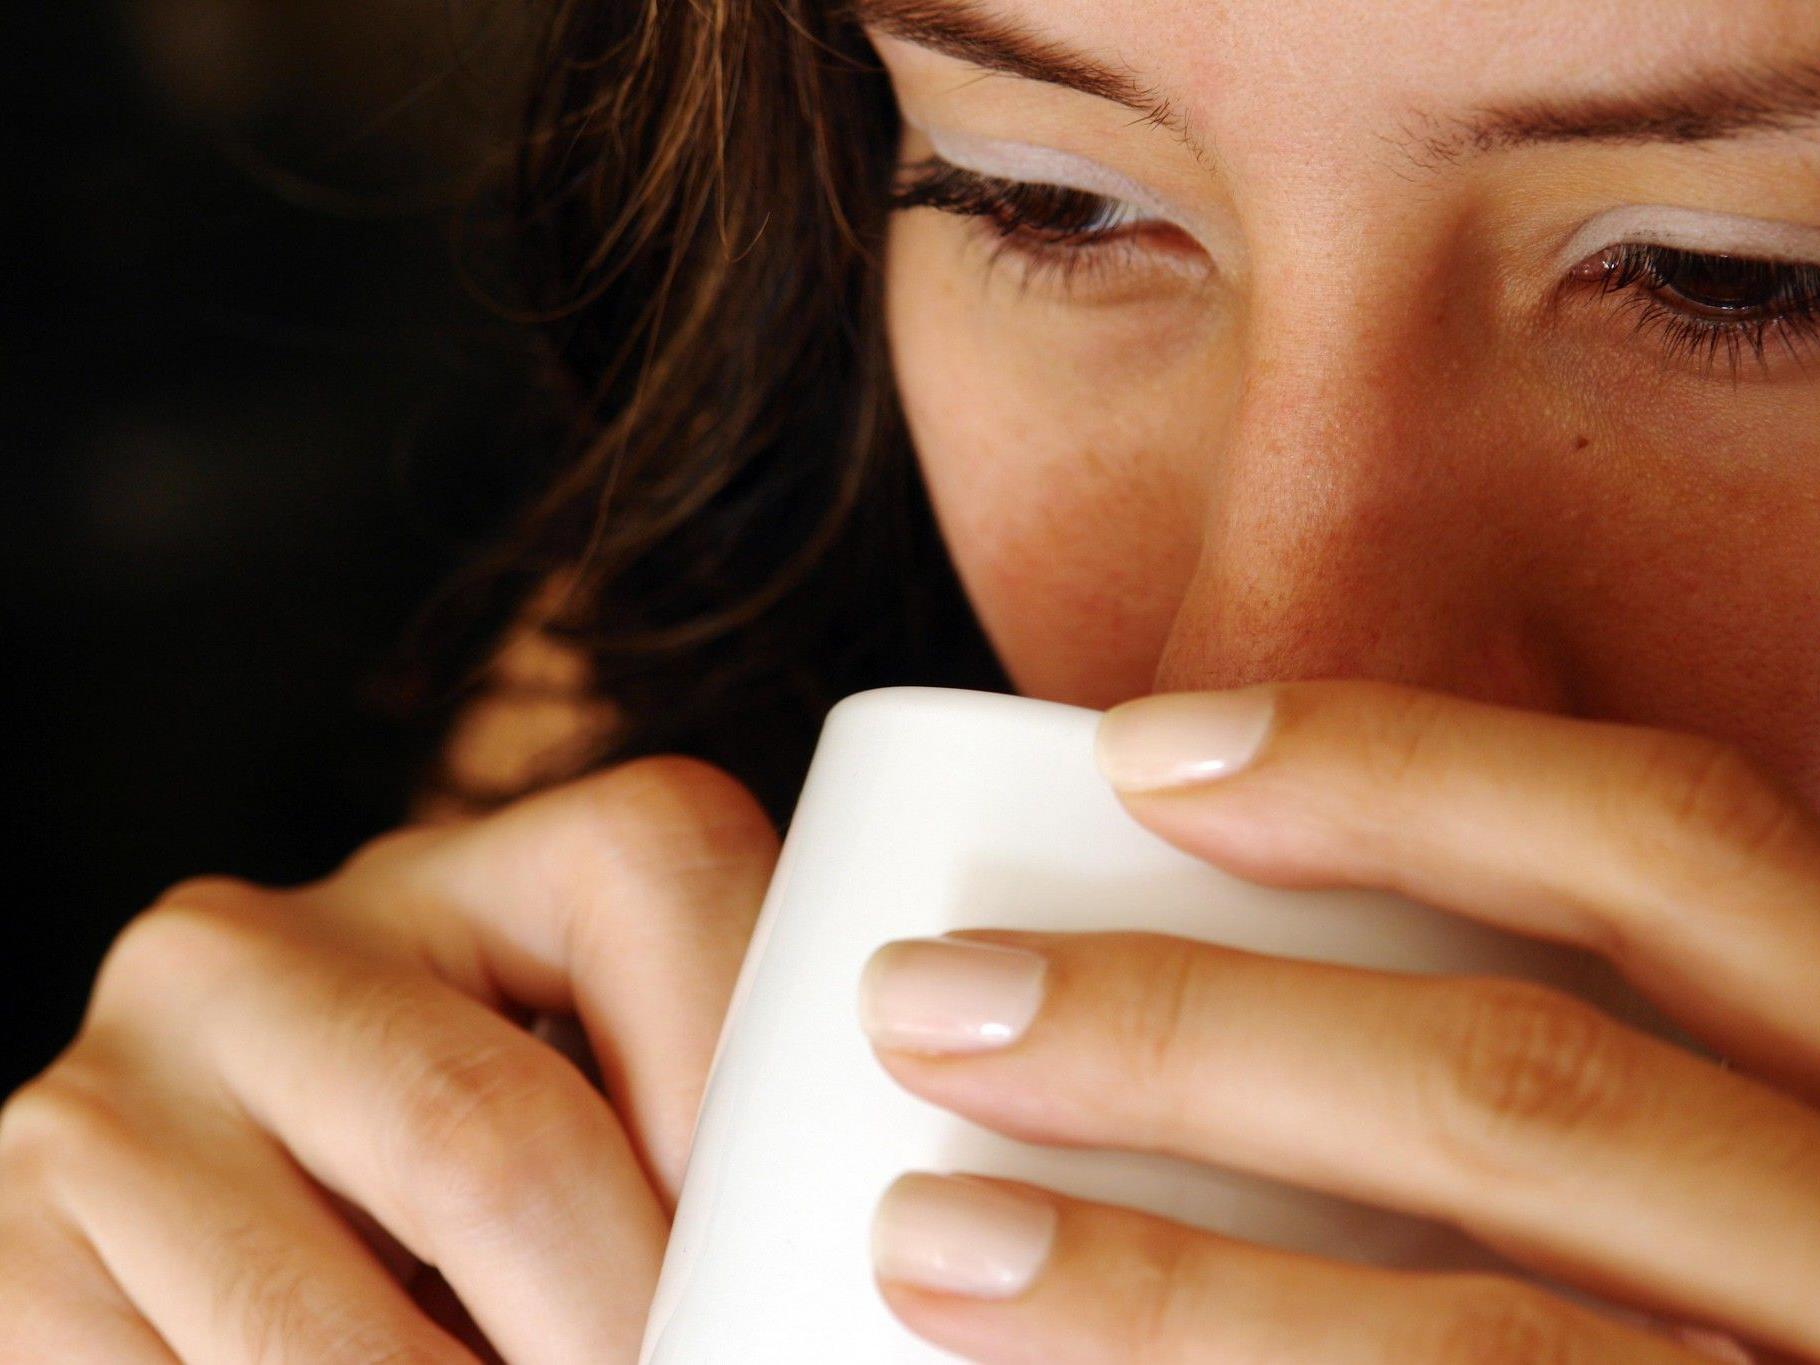 Einer Studie zufolge fallen positive Wörter schneller auf, wenn der Leser Kaffee getrunken hat.